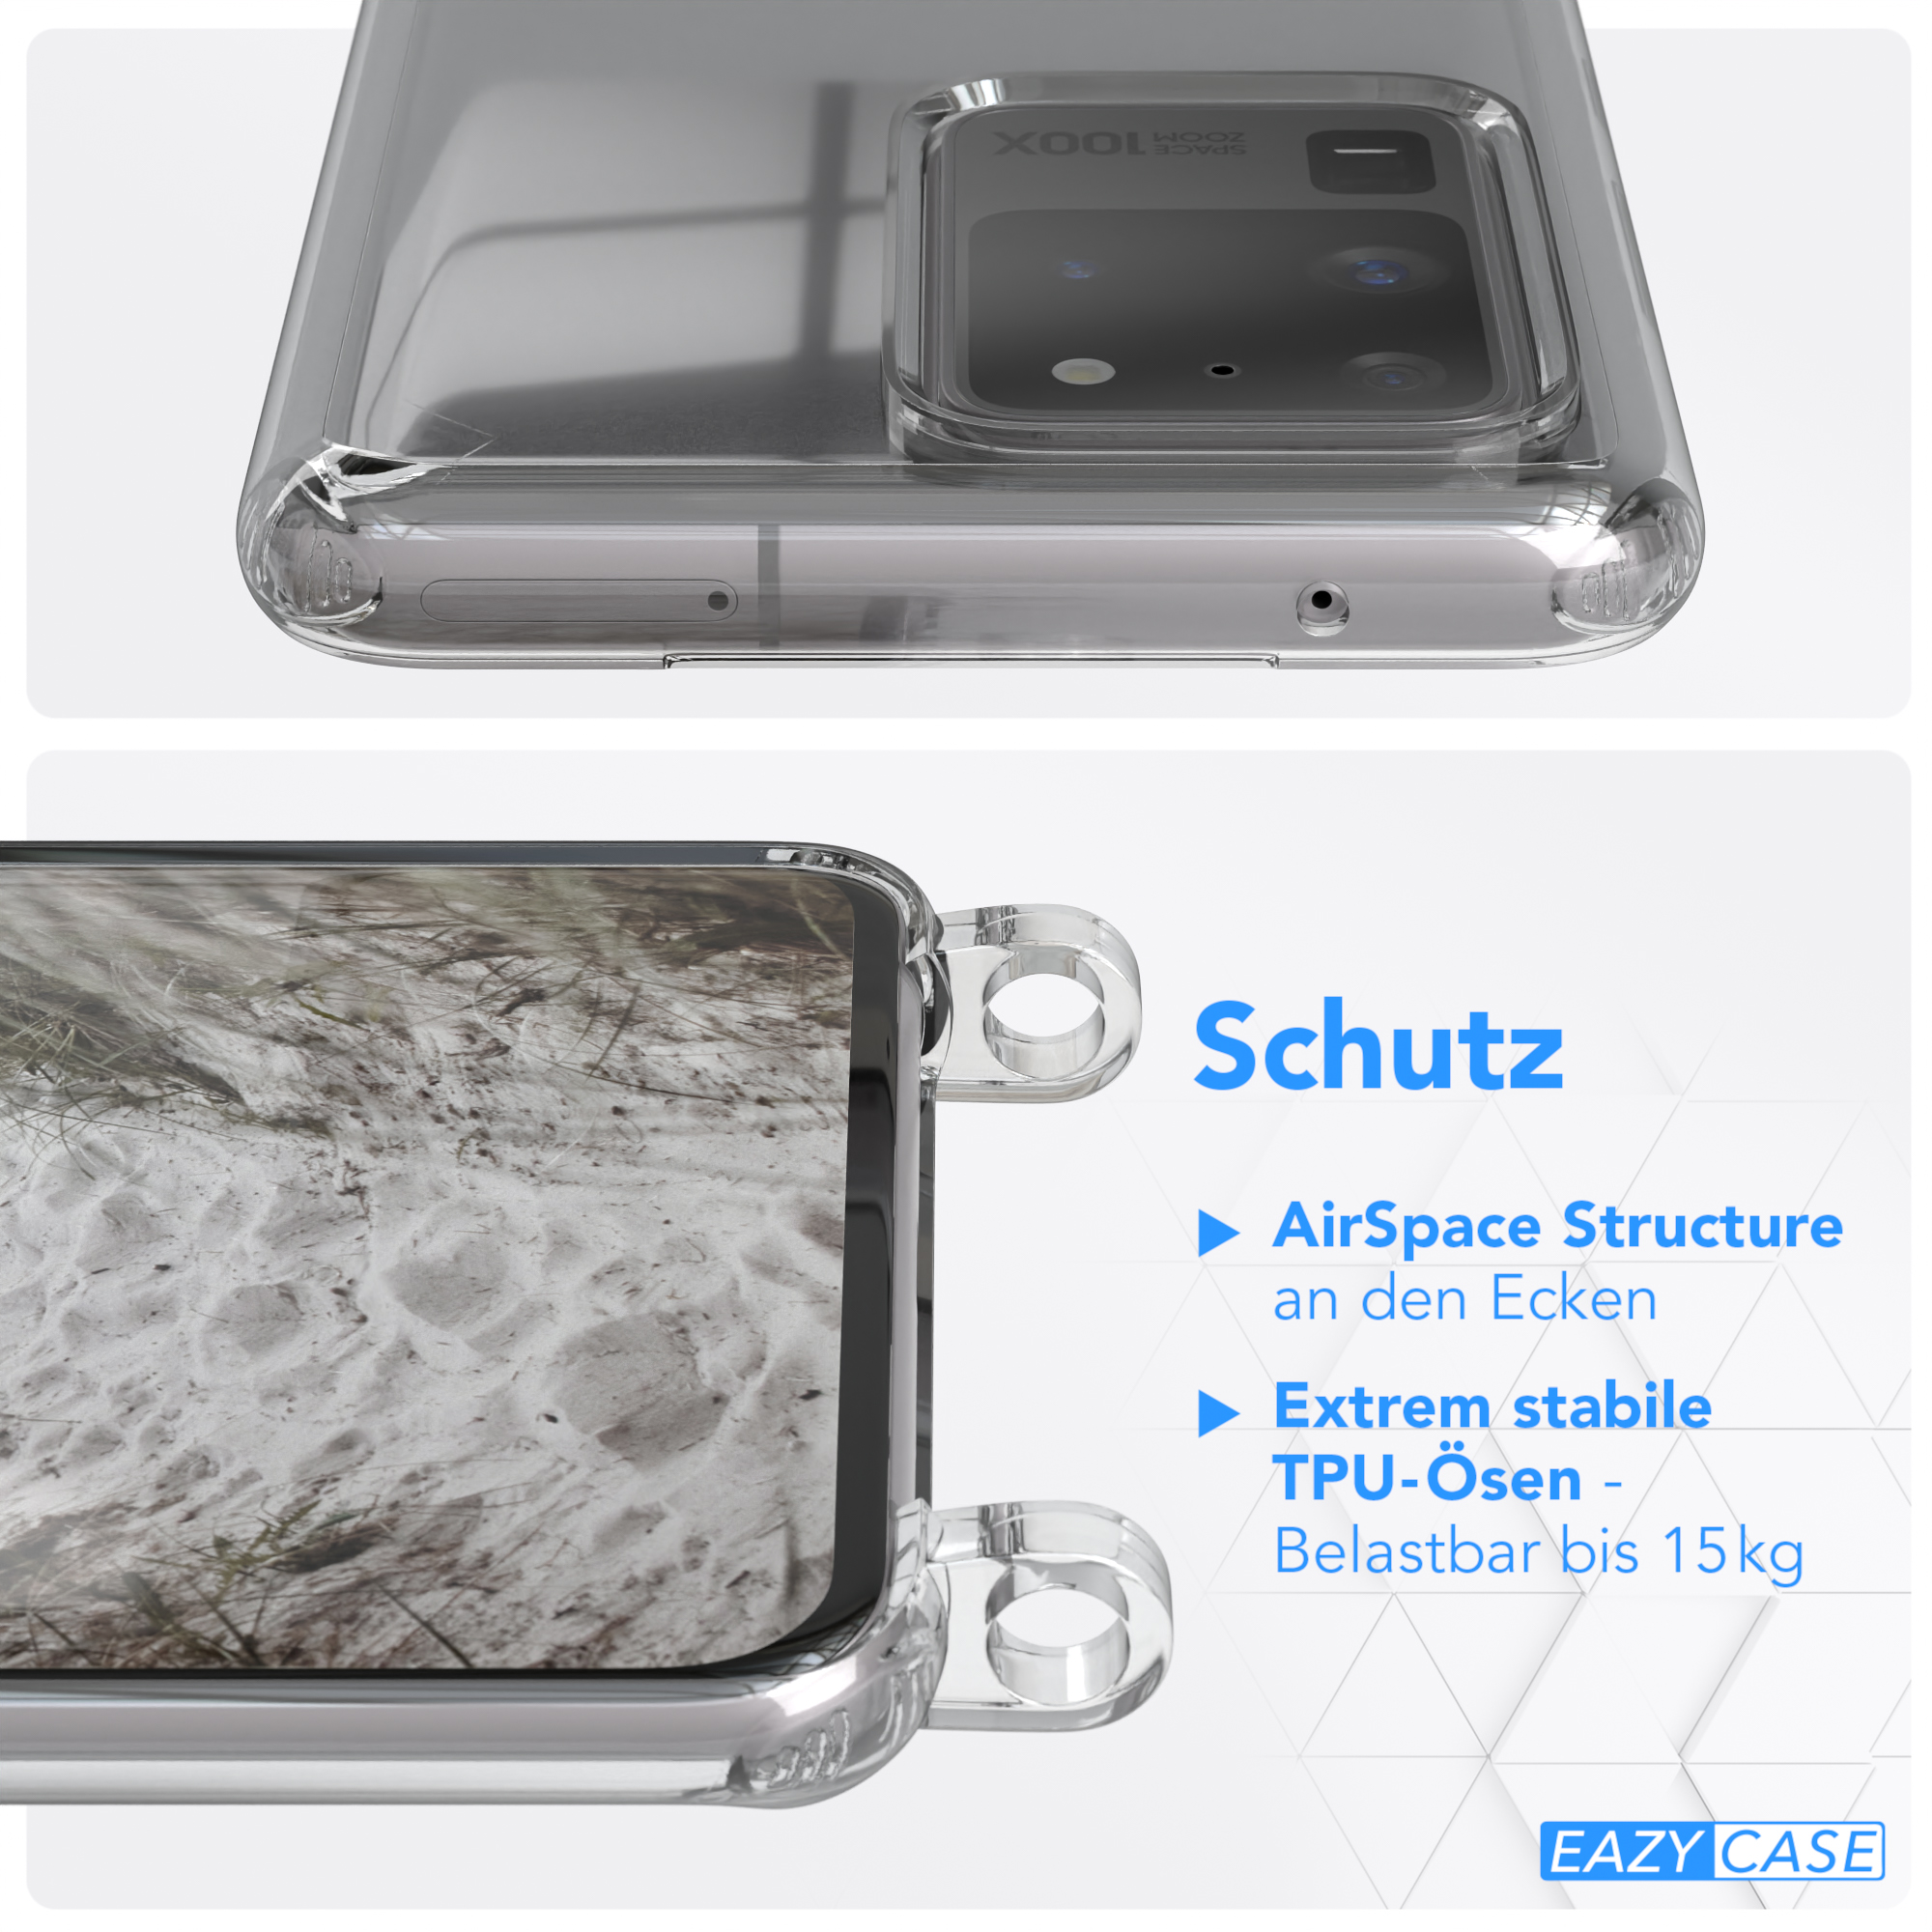 Transparente Ultra CASE Samsung, Galaxy S20 mit Ultra Umhängetasche, / Handyhülle Taupe runder Beige Grau unifarbend, Kette / EAZY 5G, S20